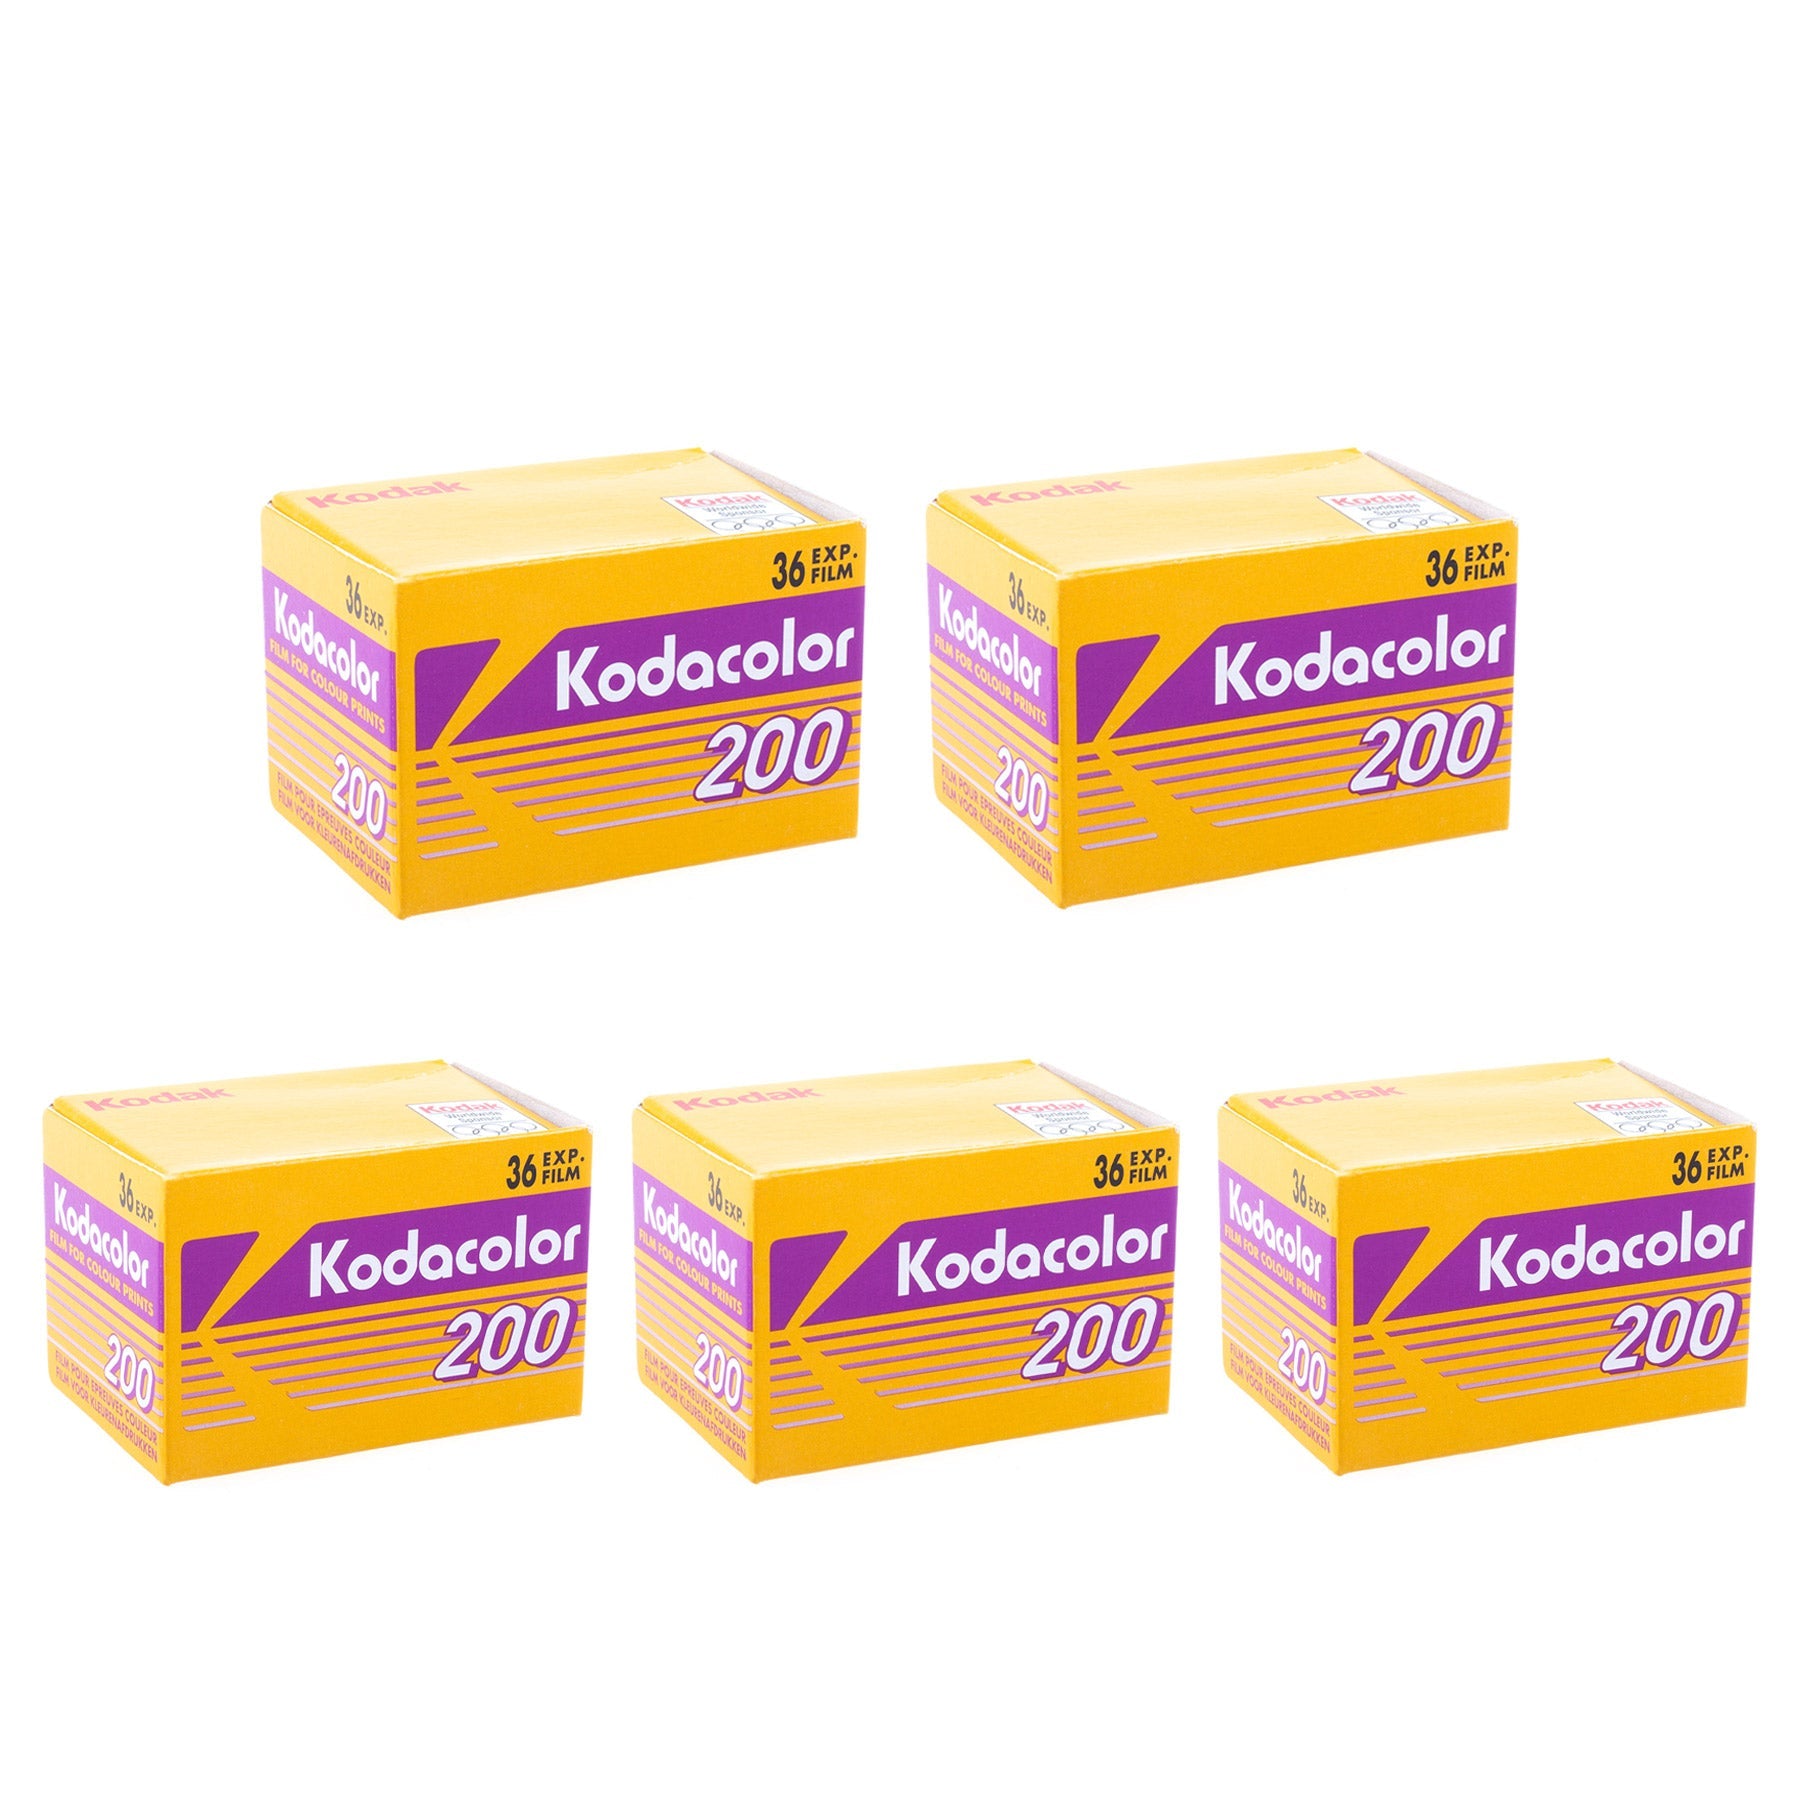 Kodak Kodacolor 35mm 200 ISO 36 exp. Dead stock 2005